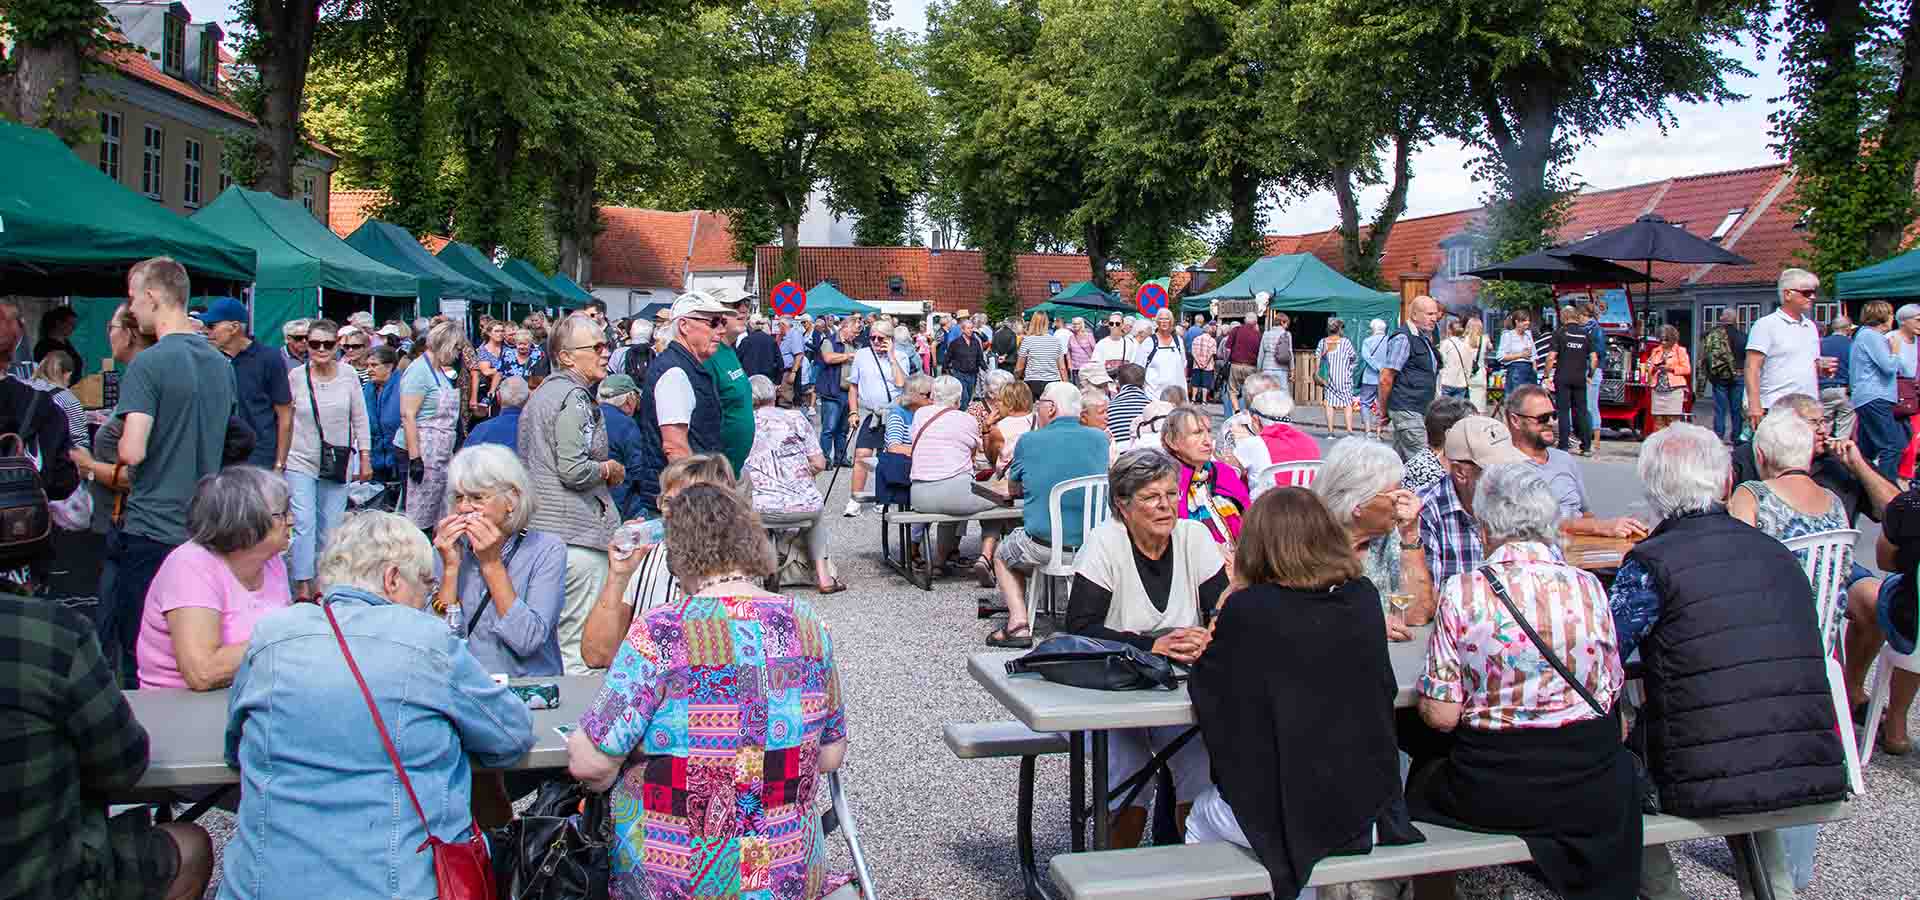 Boder og masser af mennesker på Torvet til Fødevaremarked på Rosenfestival